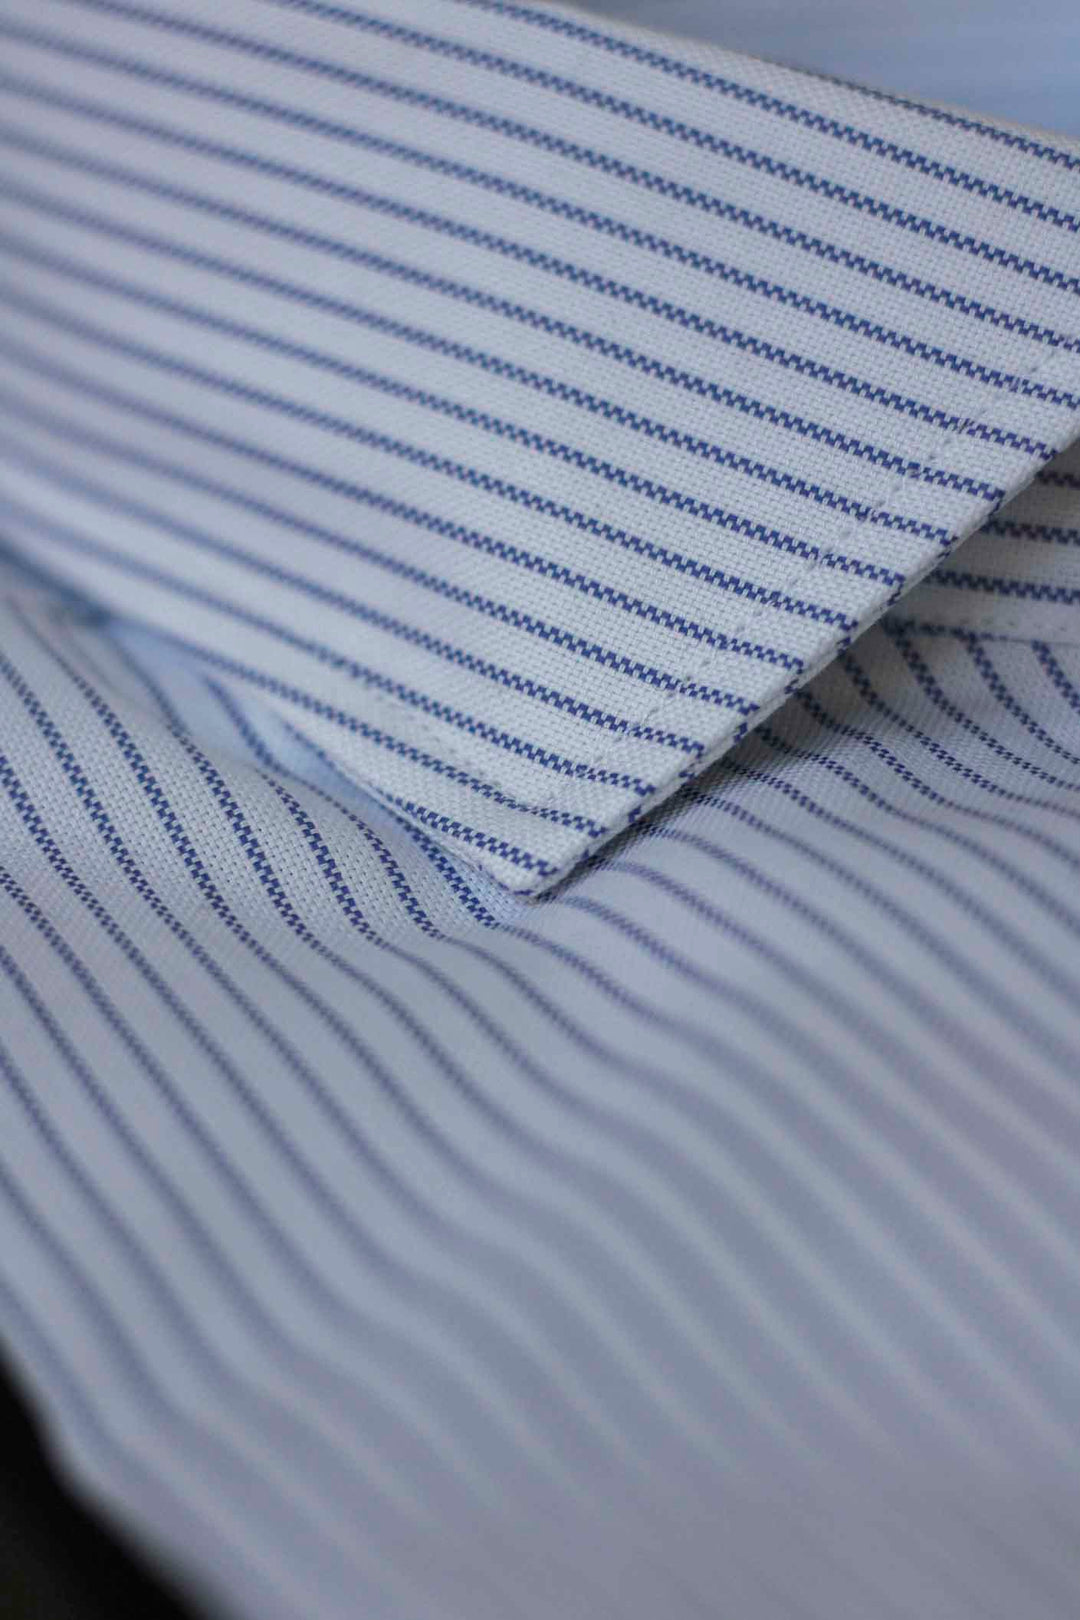 Blue Stripe Dress Shirt WITHOUT cufflinks